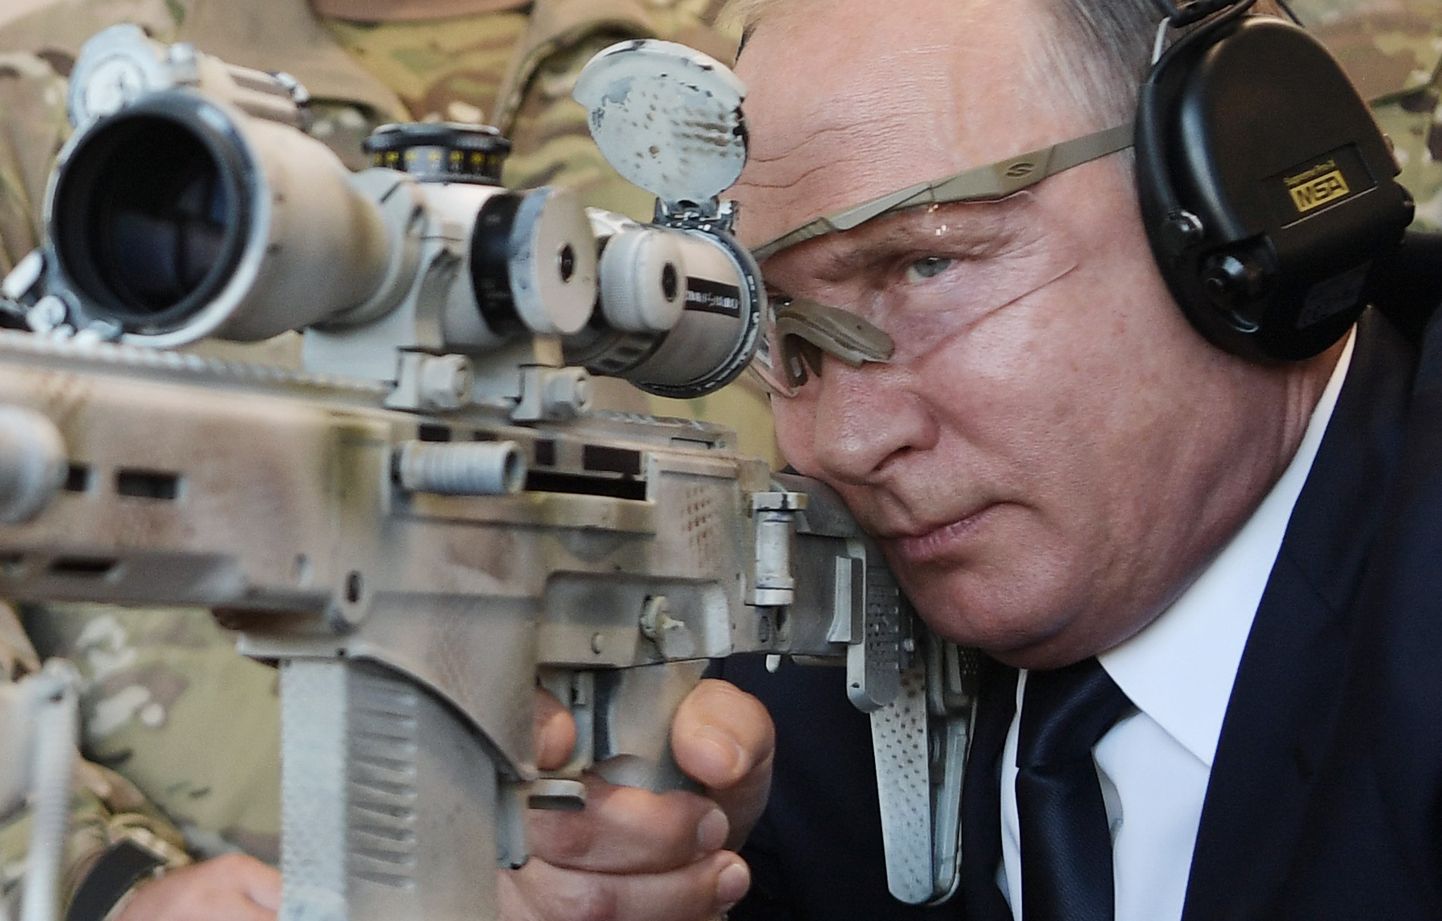 Vene riigipea Kalashnikovi relva katsetamas.